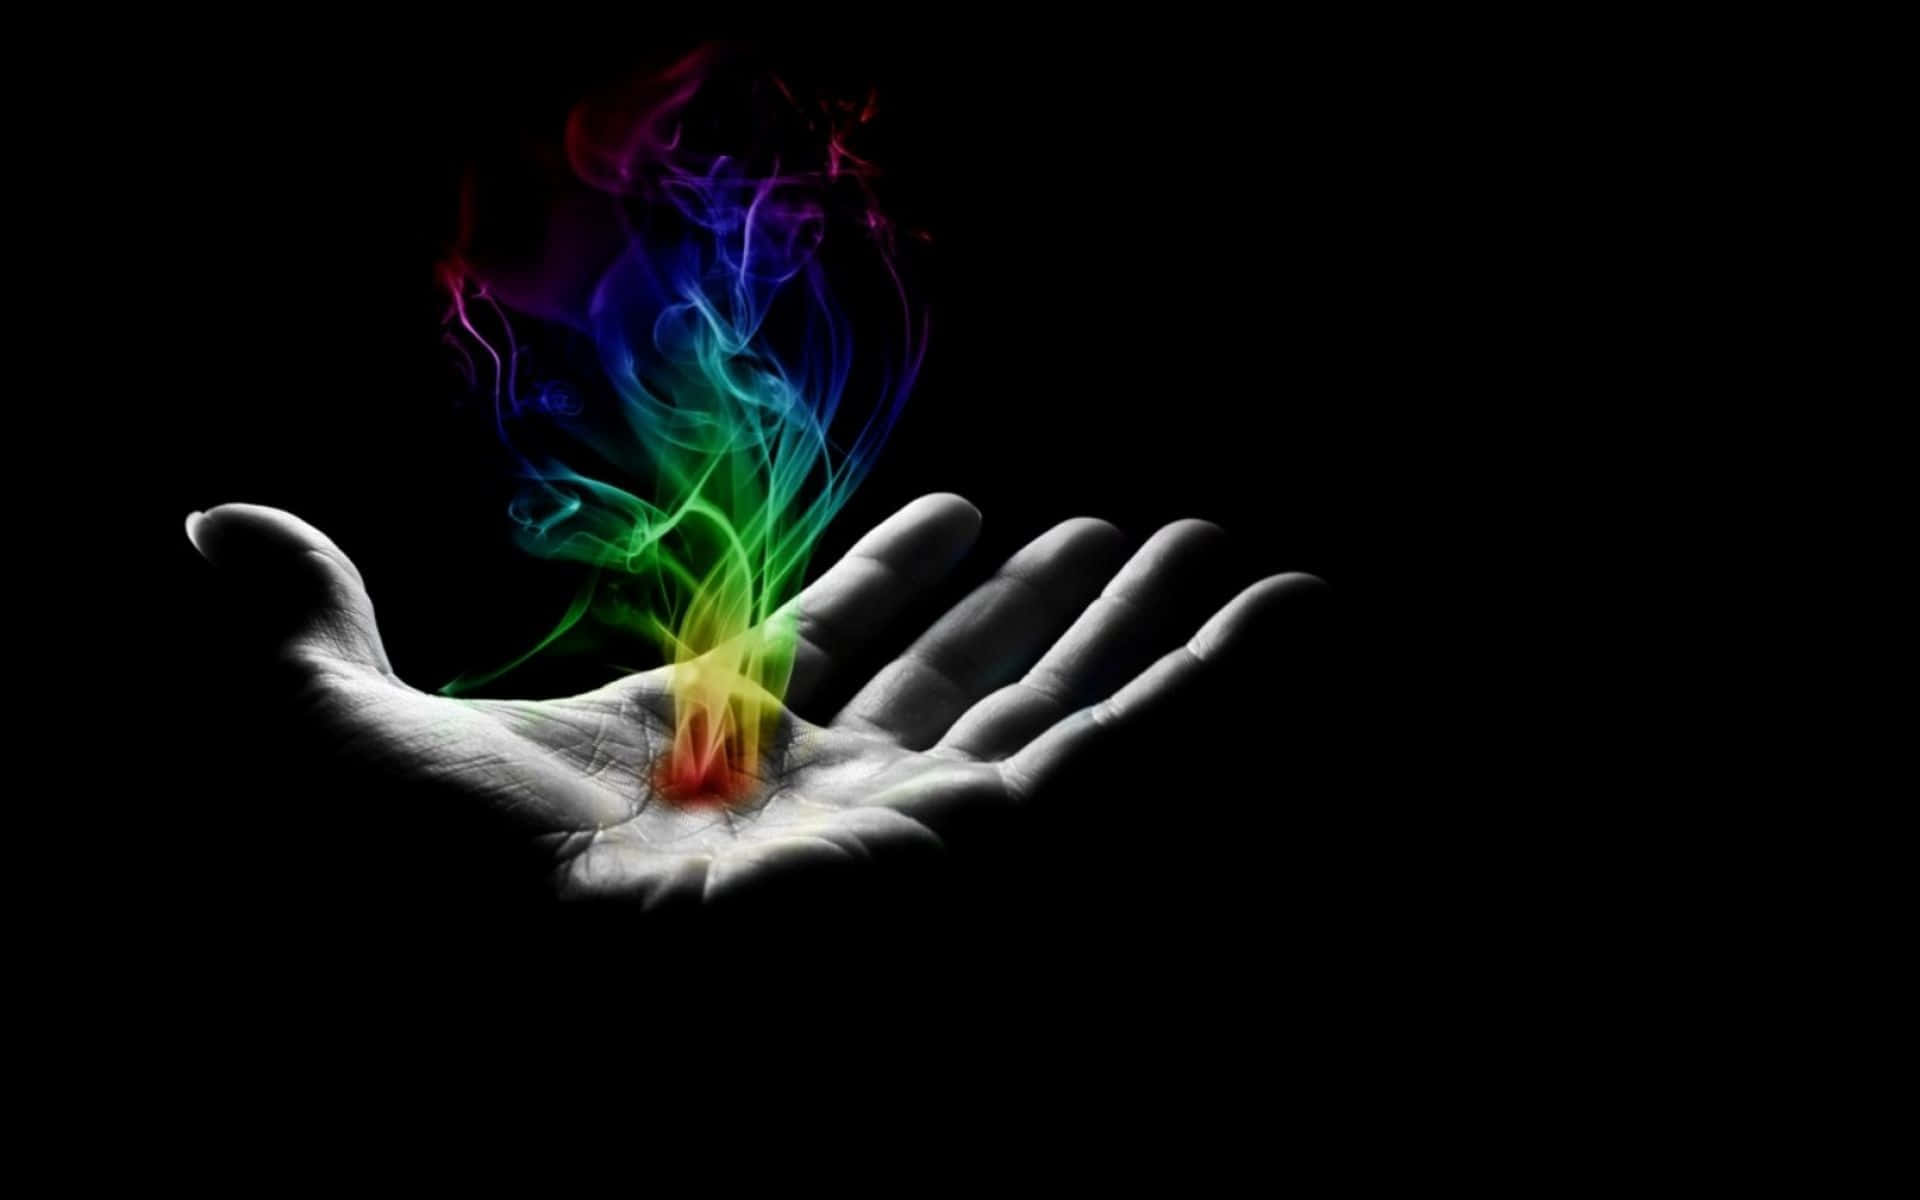 En hånd med en regnbuefarvet flamme i det Wallpaper